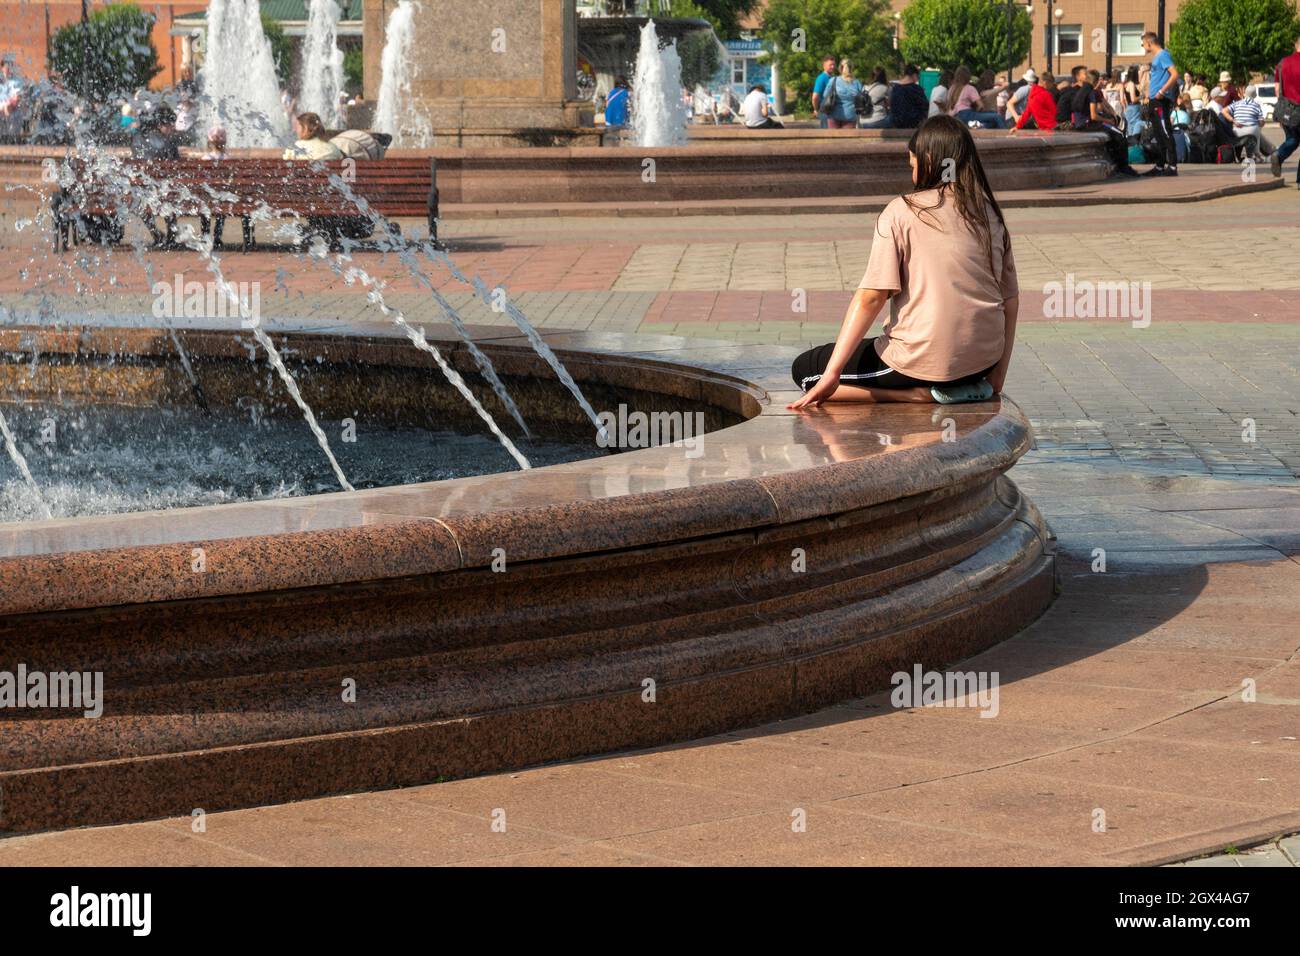 Una joven se sienta sola al borde de una fuente en la plaza de la estación de tren llena de gente en un día caluroso de verano. Foto de stock